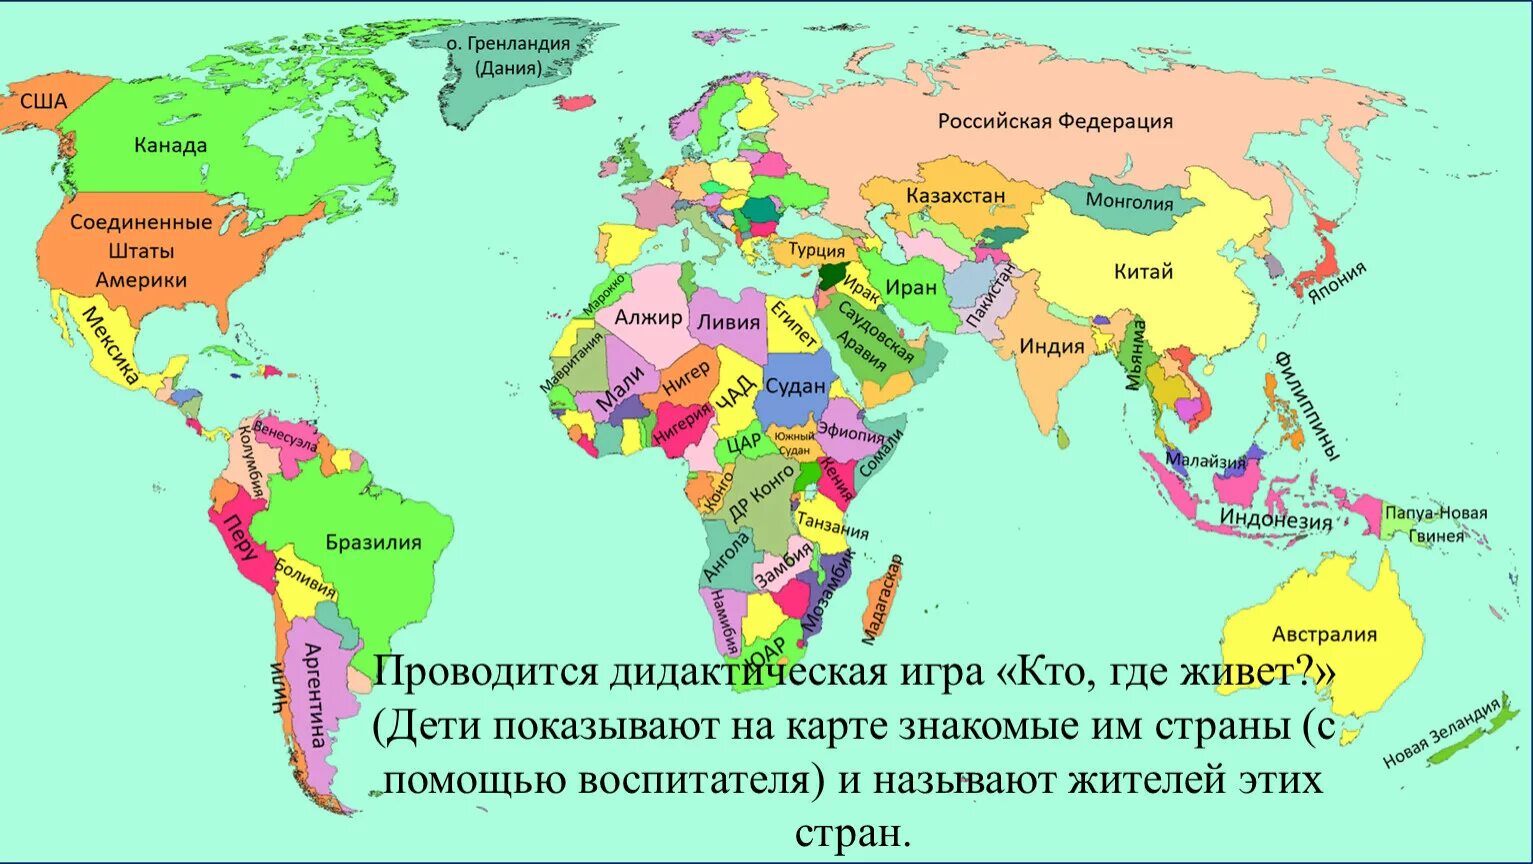 Где есть название. Карта мира географическая по странам на русском крупная. Политическая карта мира со странами крупно на русском. Географическая карта мира со странами крупно на русском. Политическая карта мира с названиями стран на русском языке.